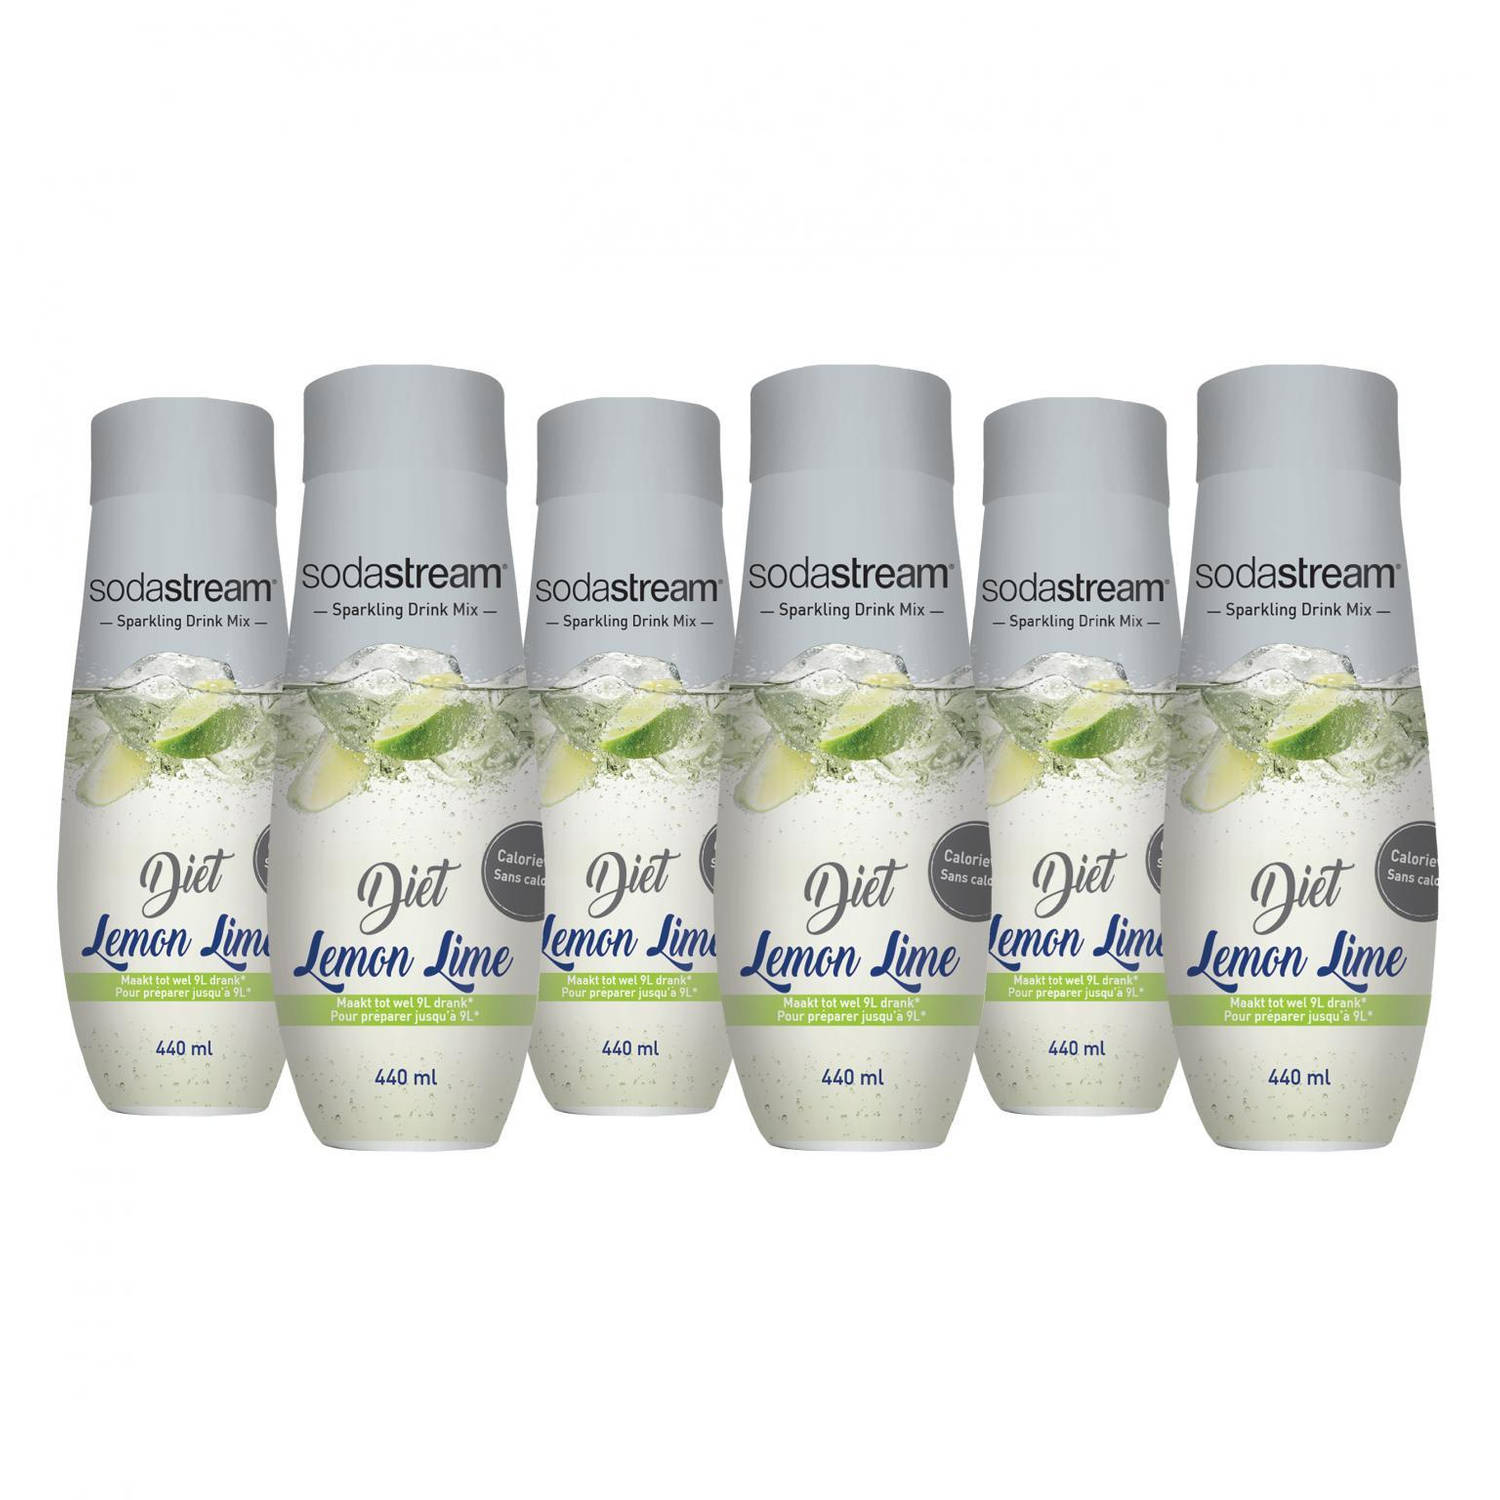 SodaStream siroop Classic Lemon Lime Light - Voordeelpack 6 stuks